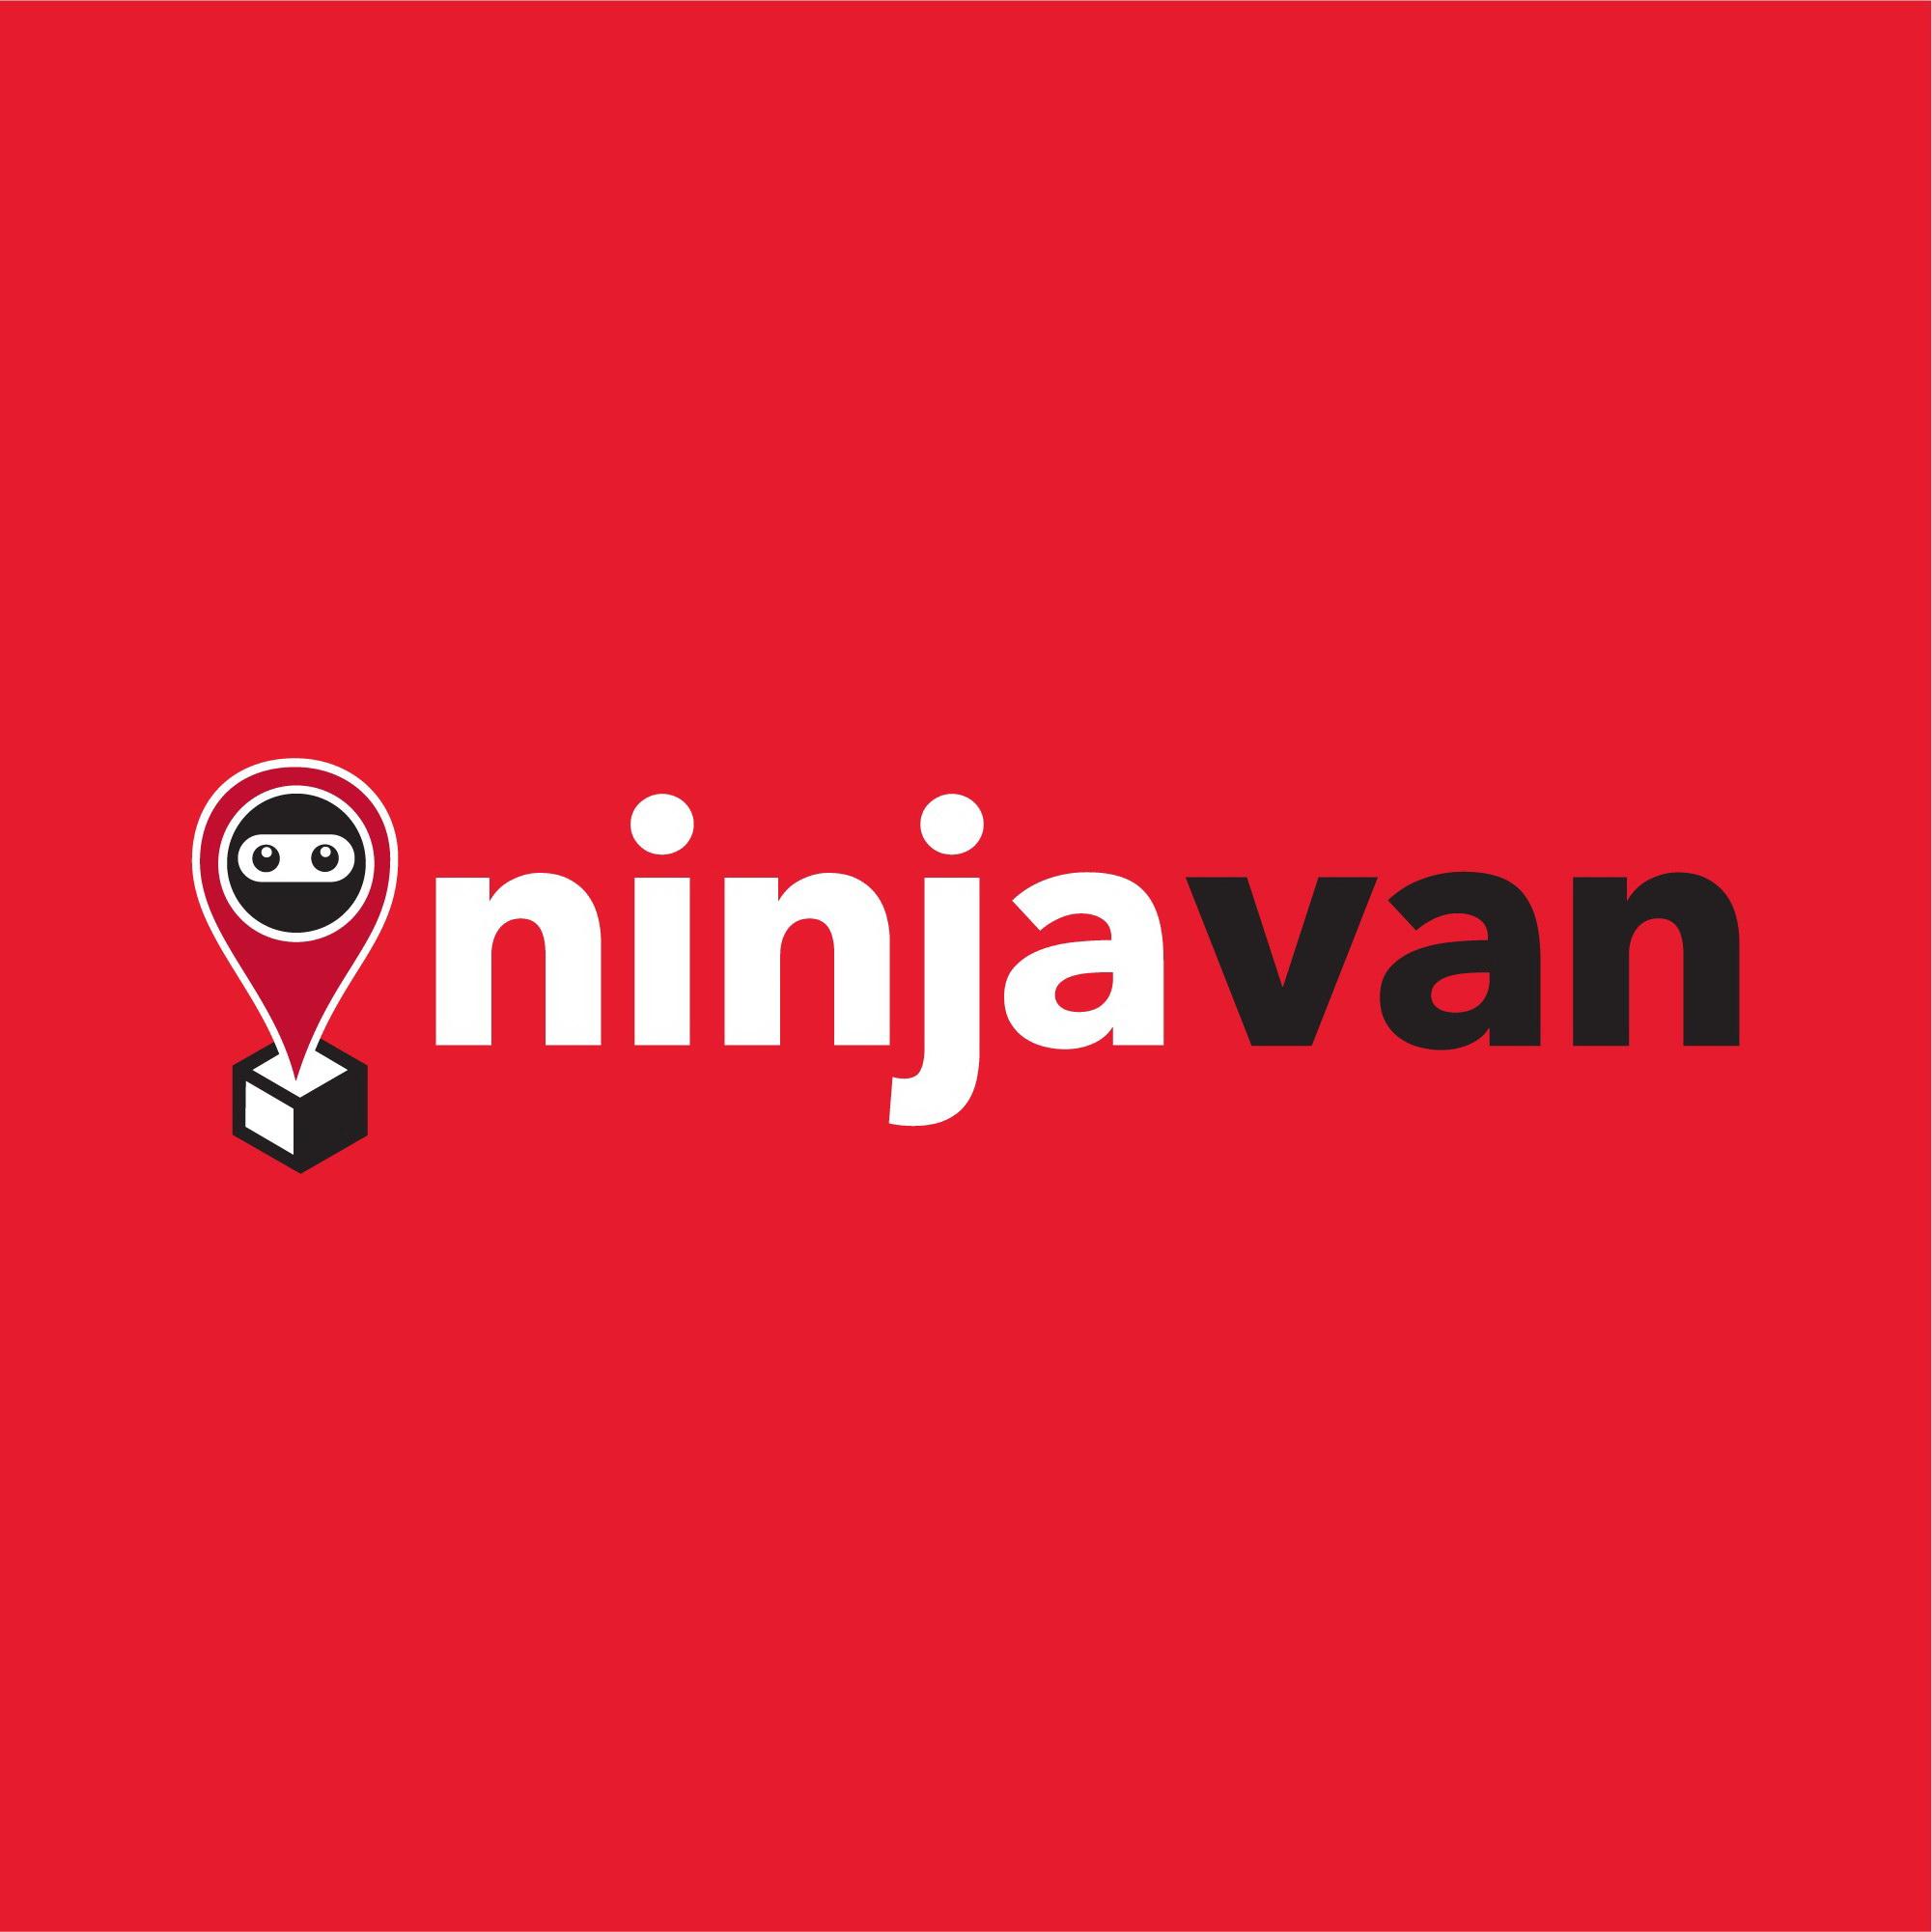  Ninja Van